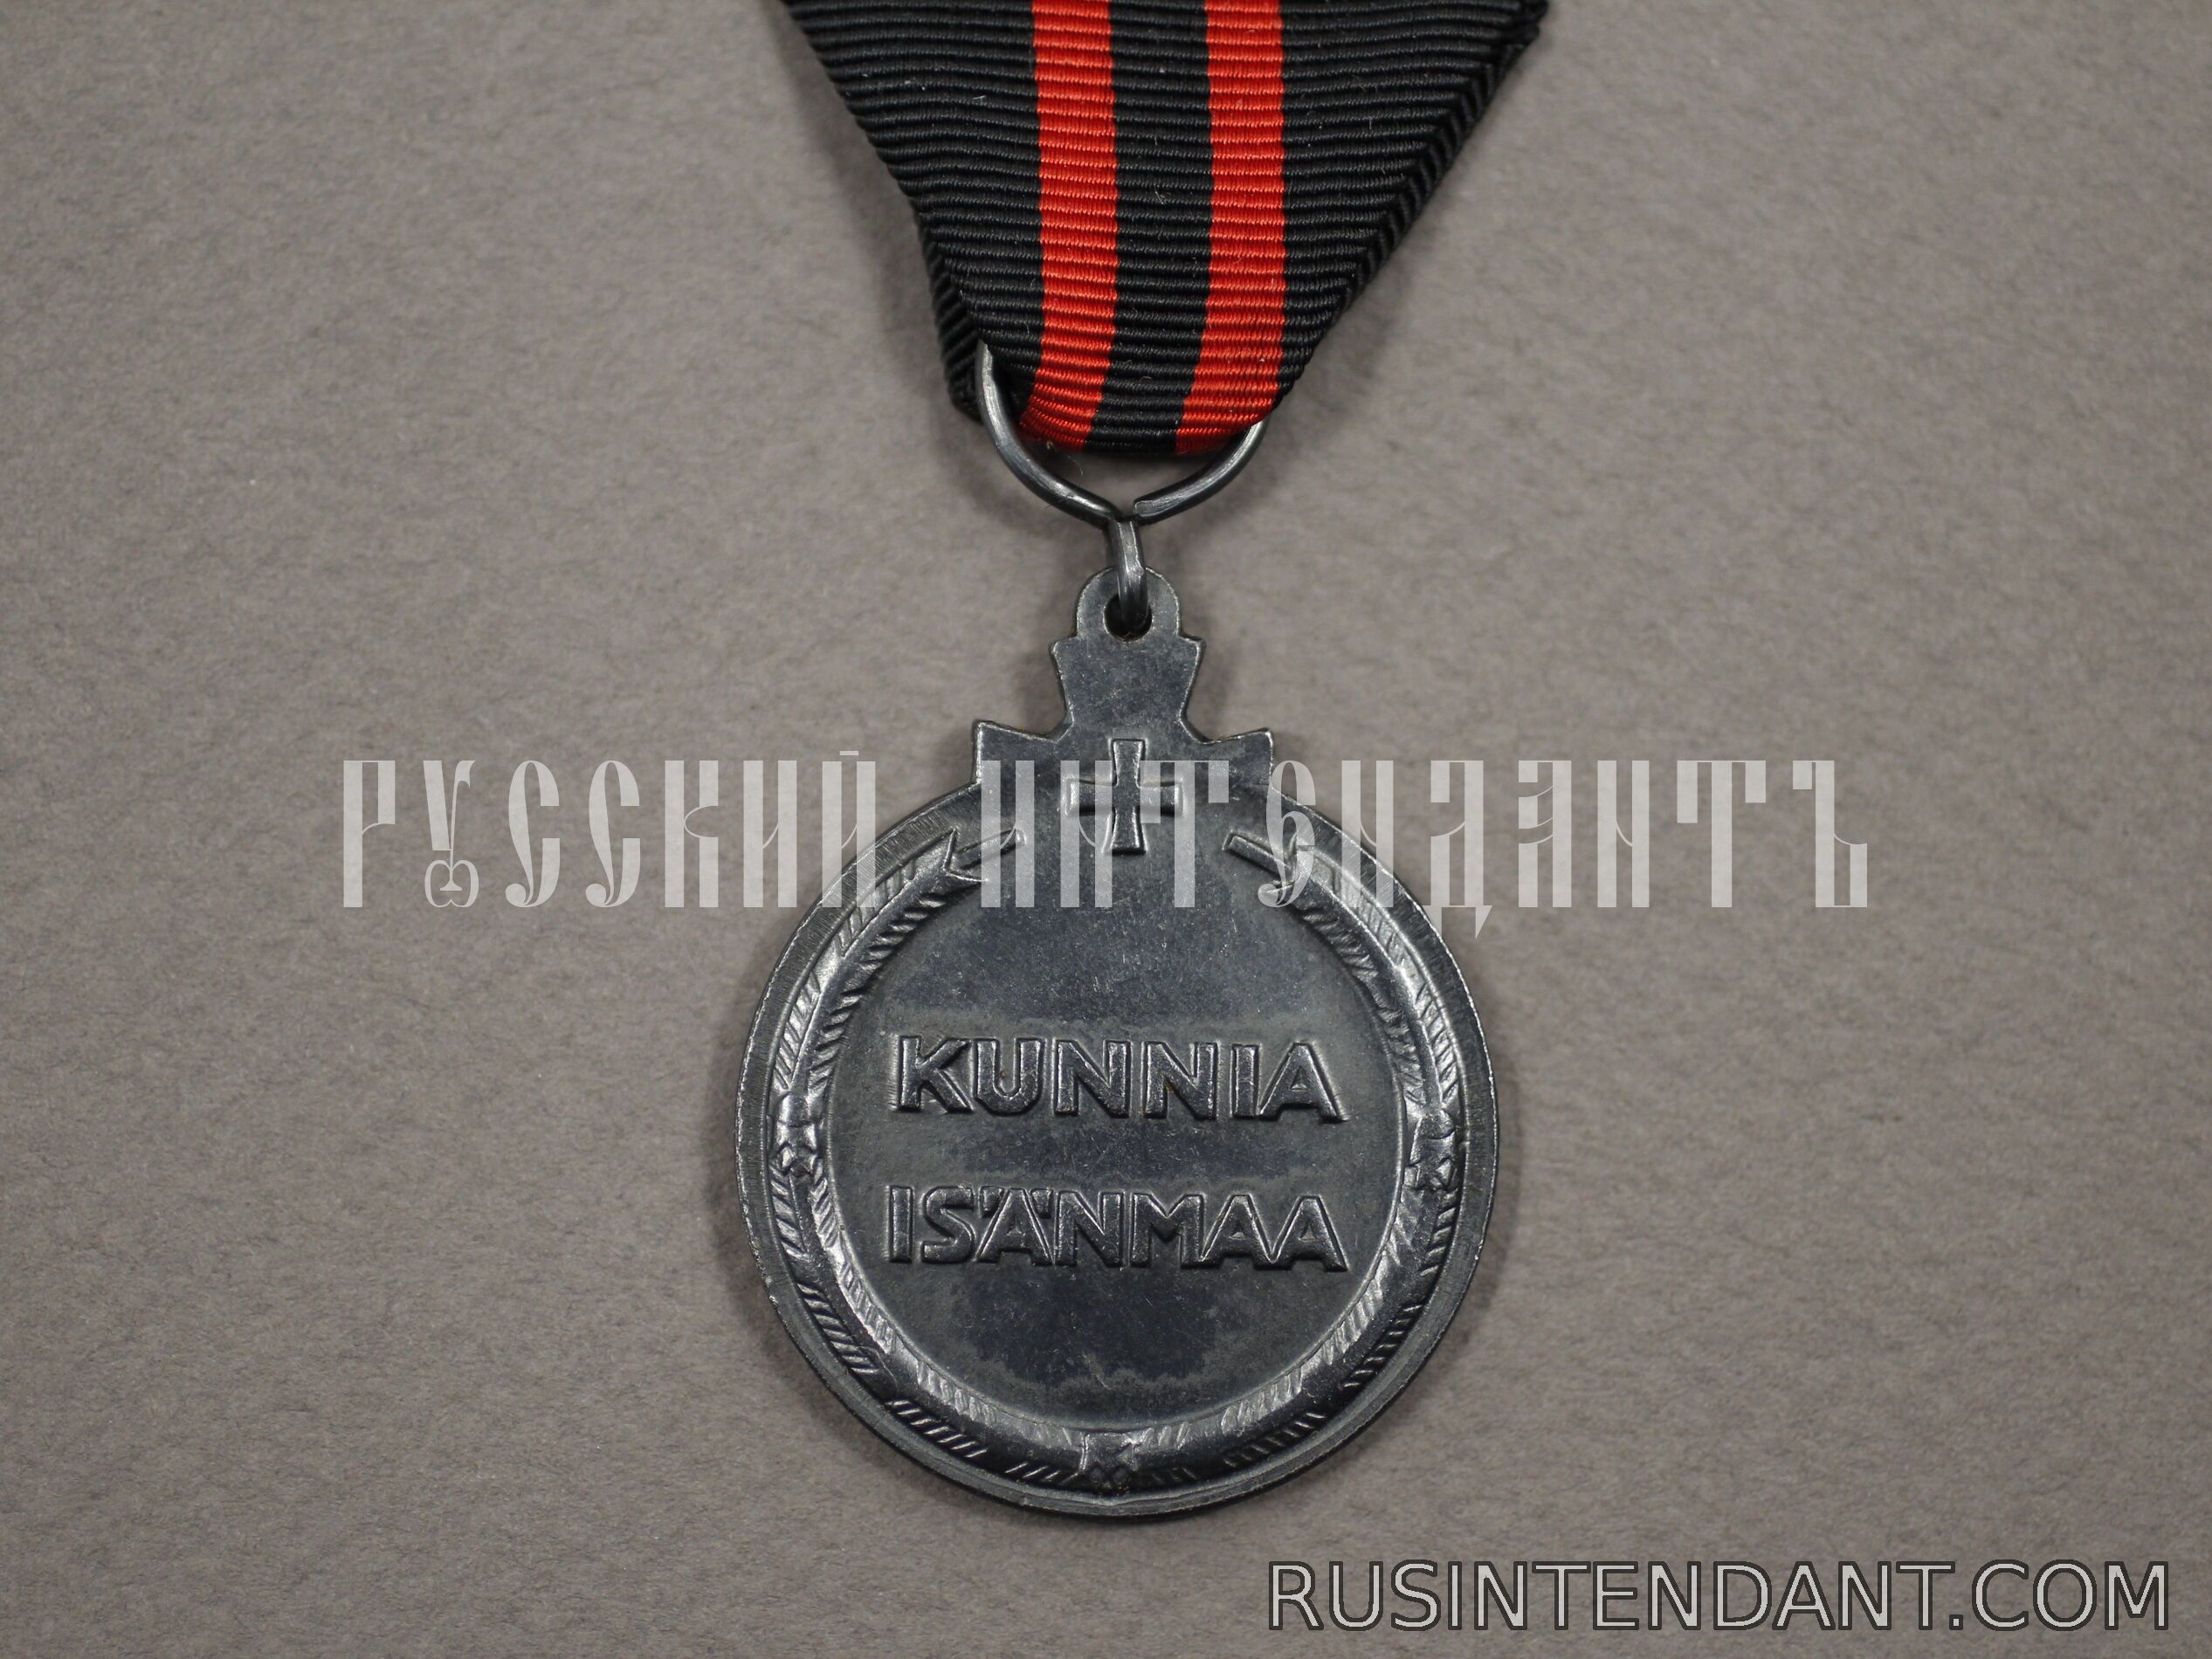 Фото 2: Медаль зимней войны 1939-1940 